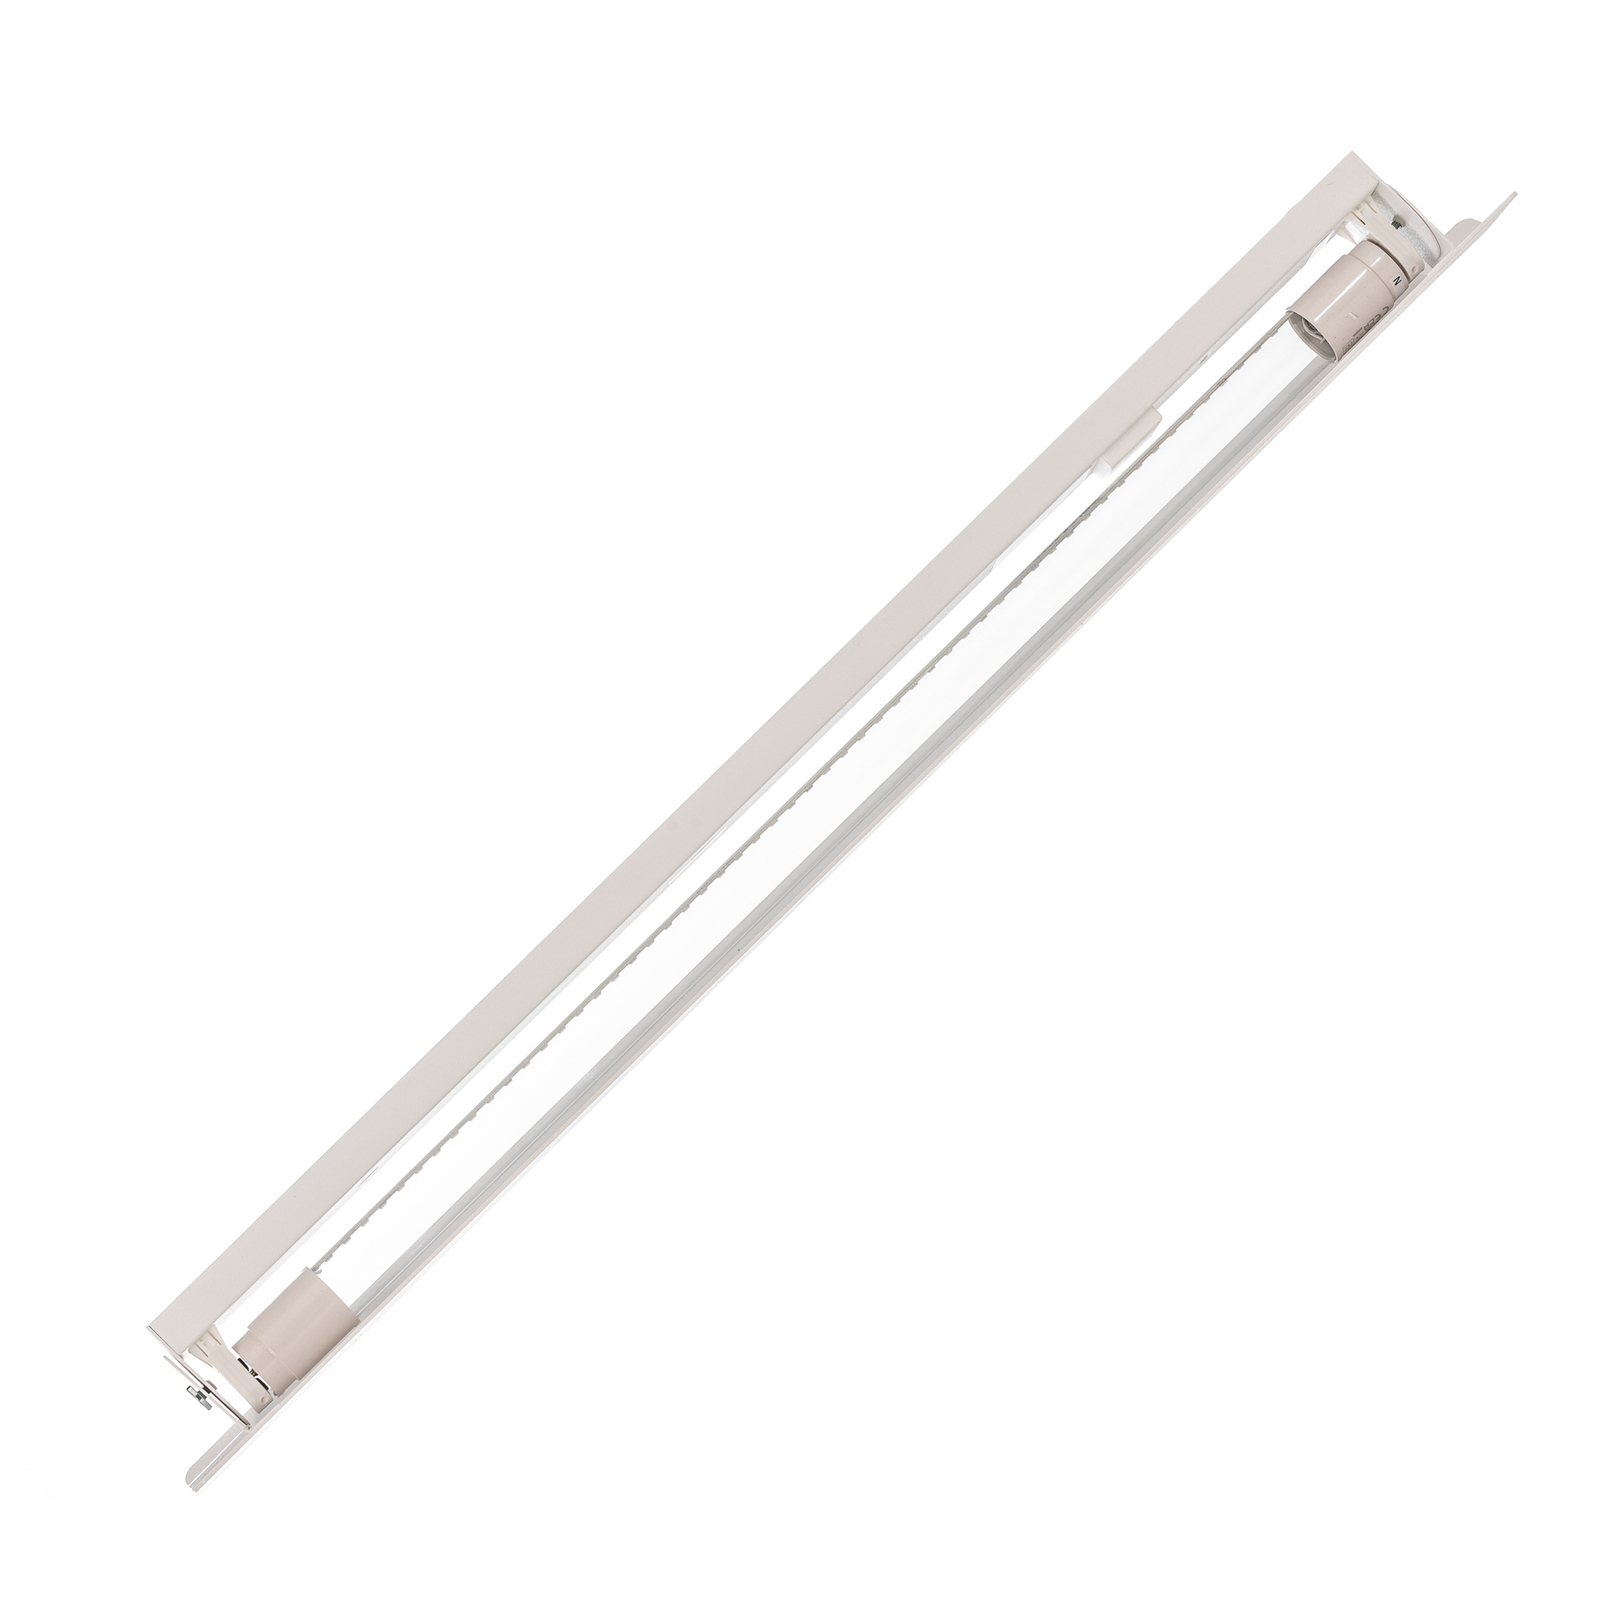 Vägglampa Wing, vit, stål, strömbrytare, 68 cm bred